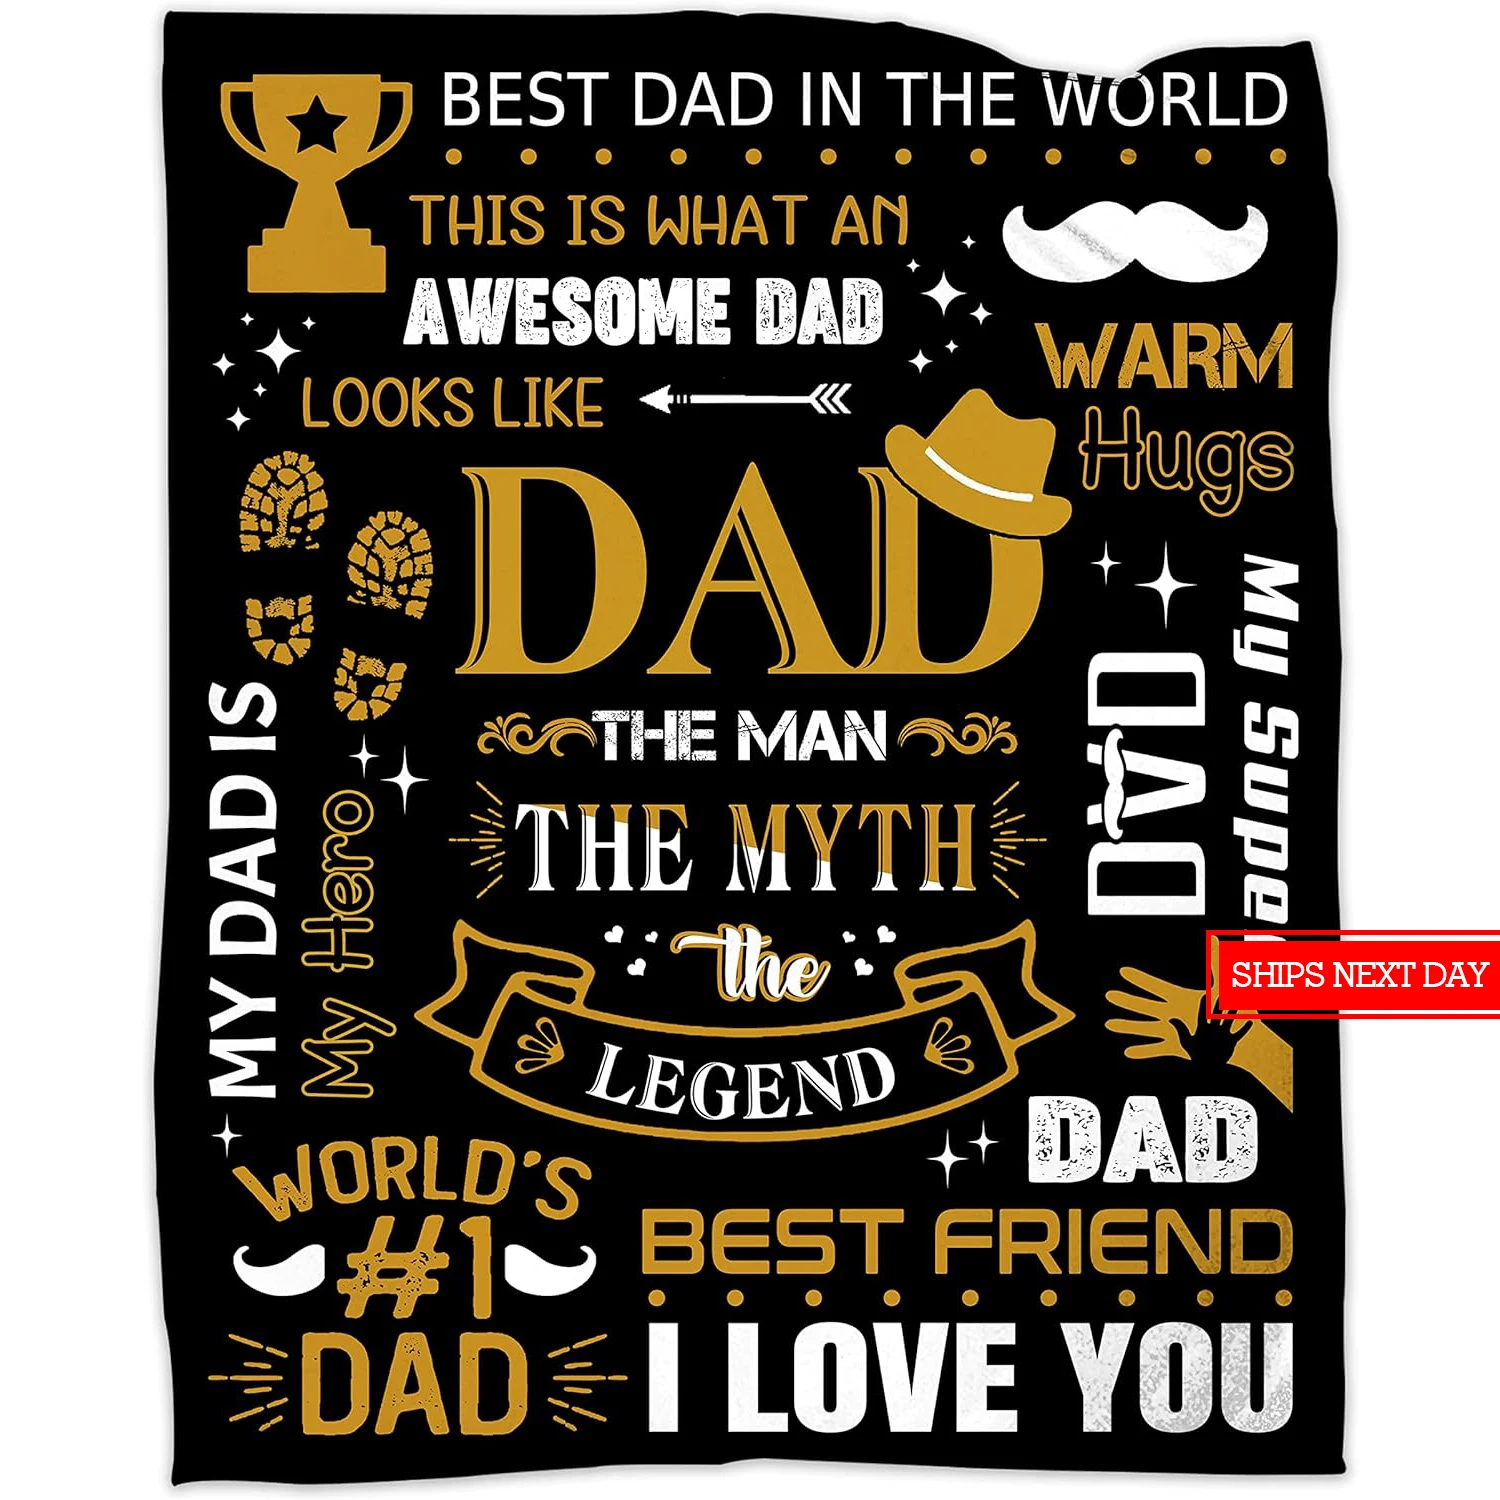 Regalo di coperta di flanella del padre-regalo di coperta del padre per mio padre, compleanno del papà, natale, regalo del ringraziamento